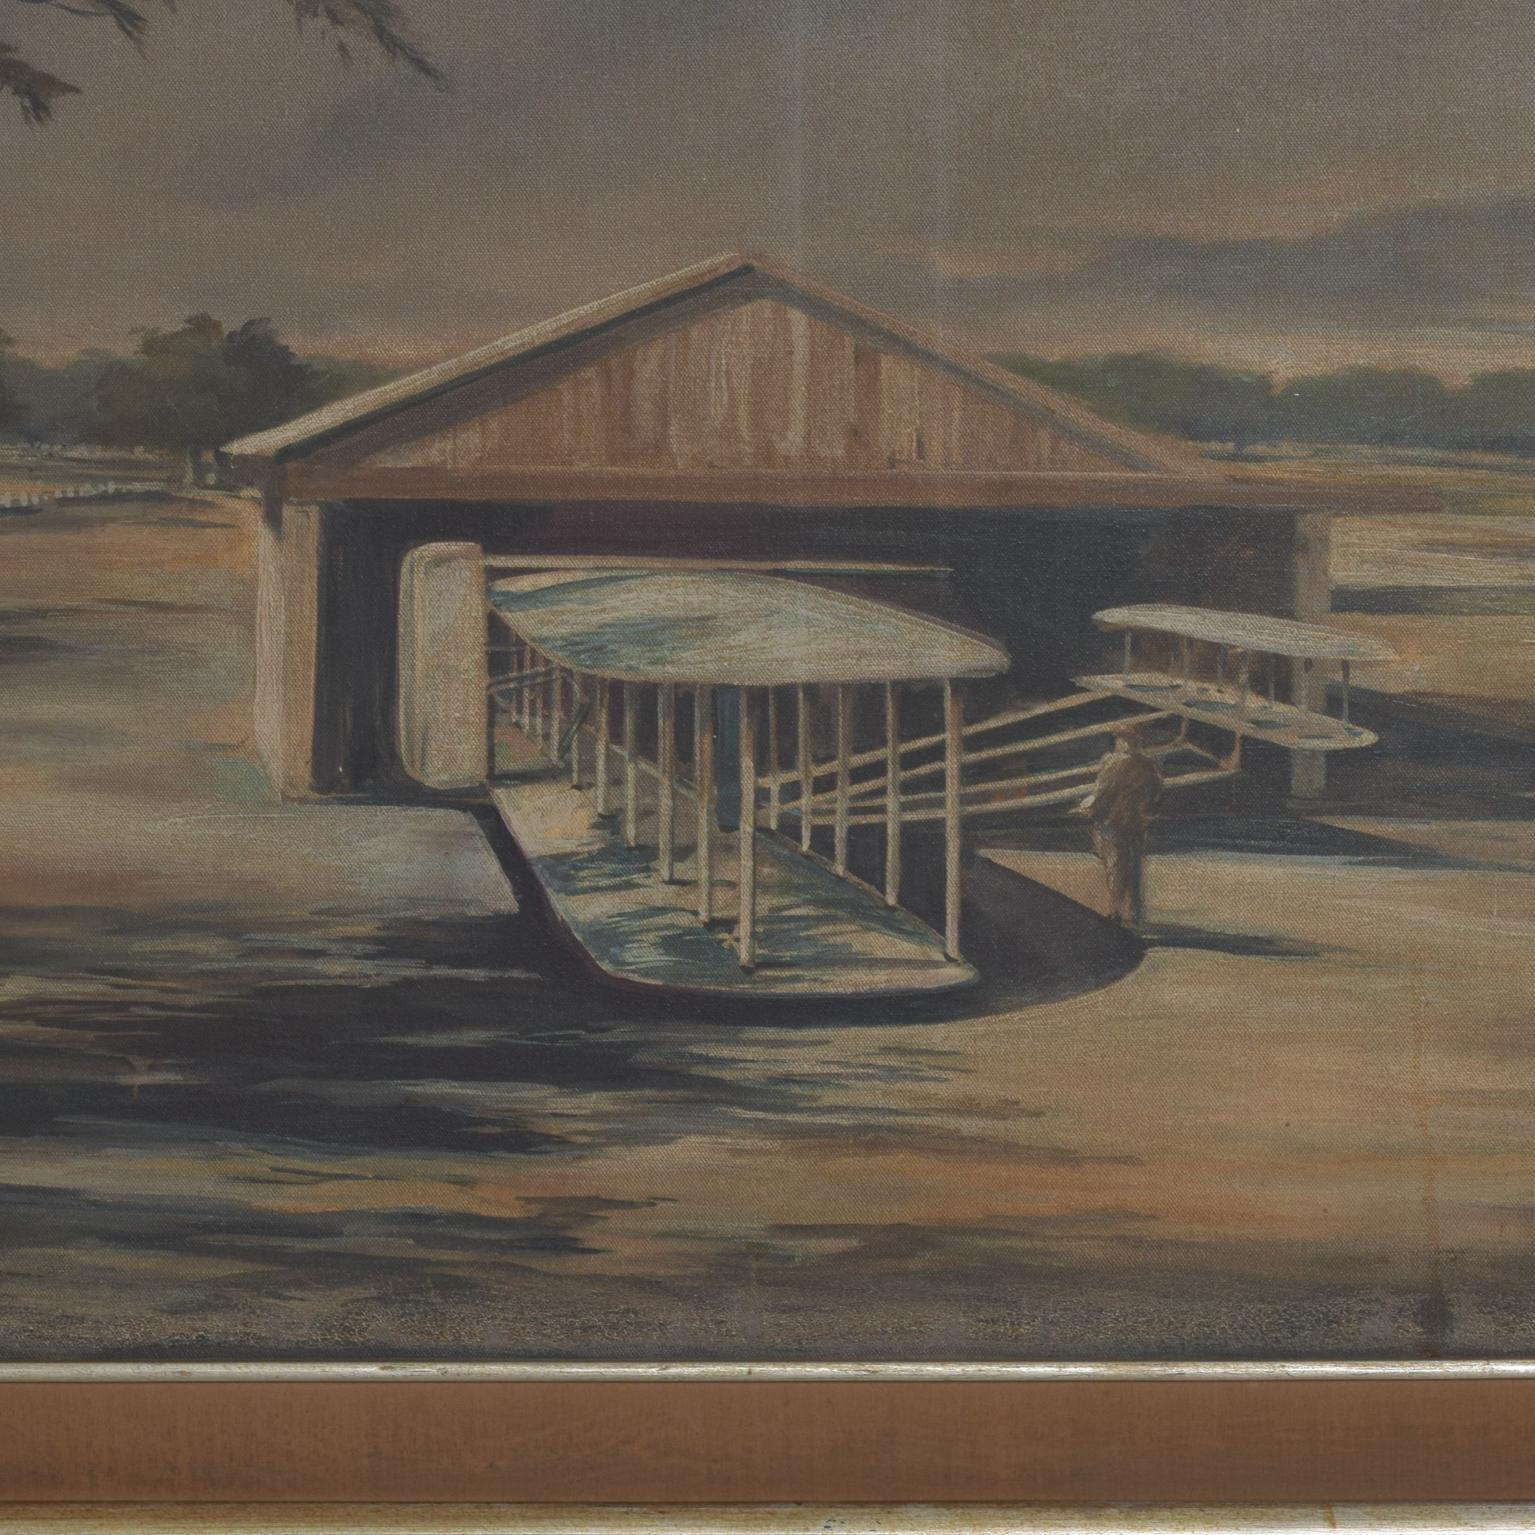 Flugzeug Hangar Gemälde in Öl auf Leinwand, gerahmt.
Vintage Mid-Century Modern Luftfahrtkunst. 
Zurzeit liegen keine weiteren Informationen vor.
42 x 30,5 H x 1 T, Kunst 34,75 x 23 1/8 H
Original Vintage unrestauriert Zustand, siehe alle Bilder